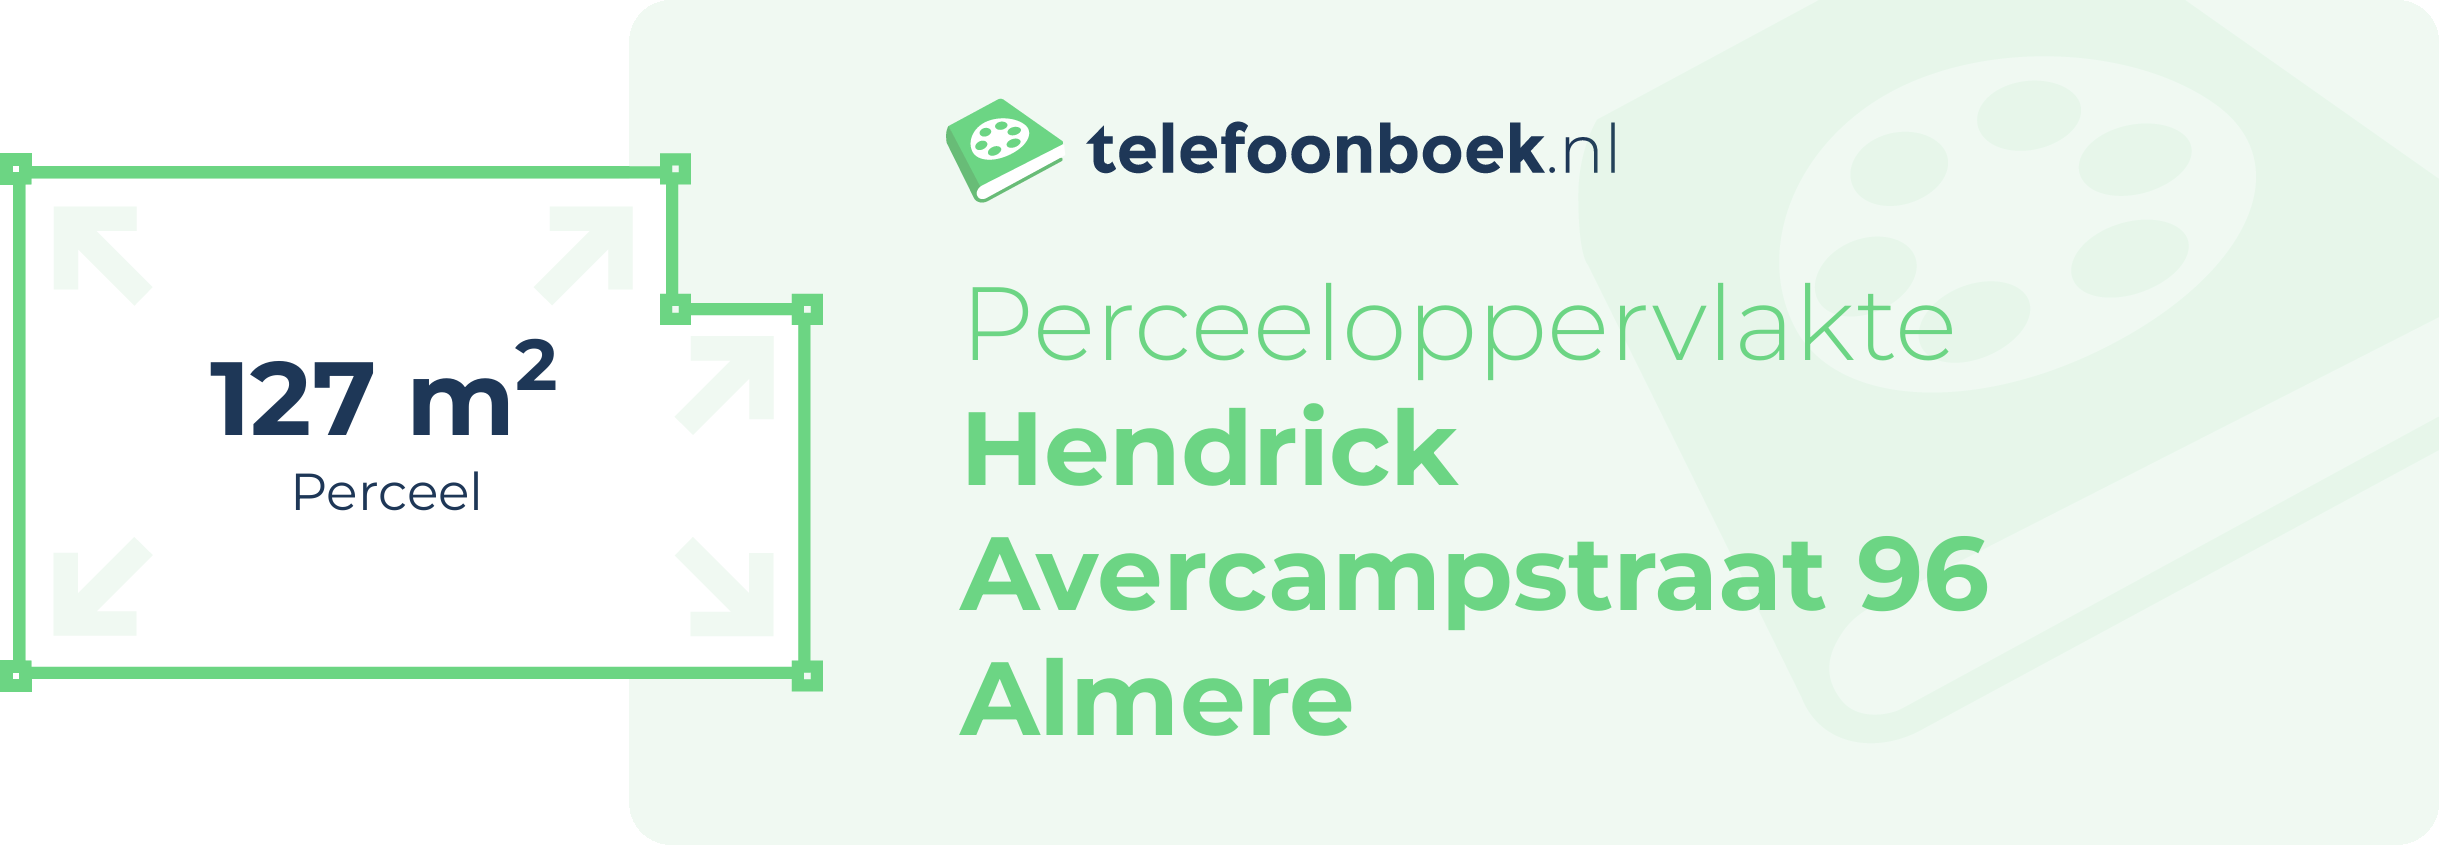 Perceeloppervlakte Hendrick Avercampstraat 96 Almere